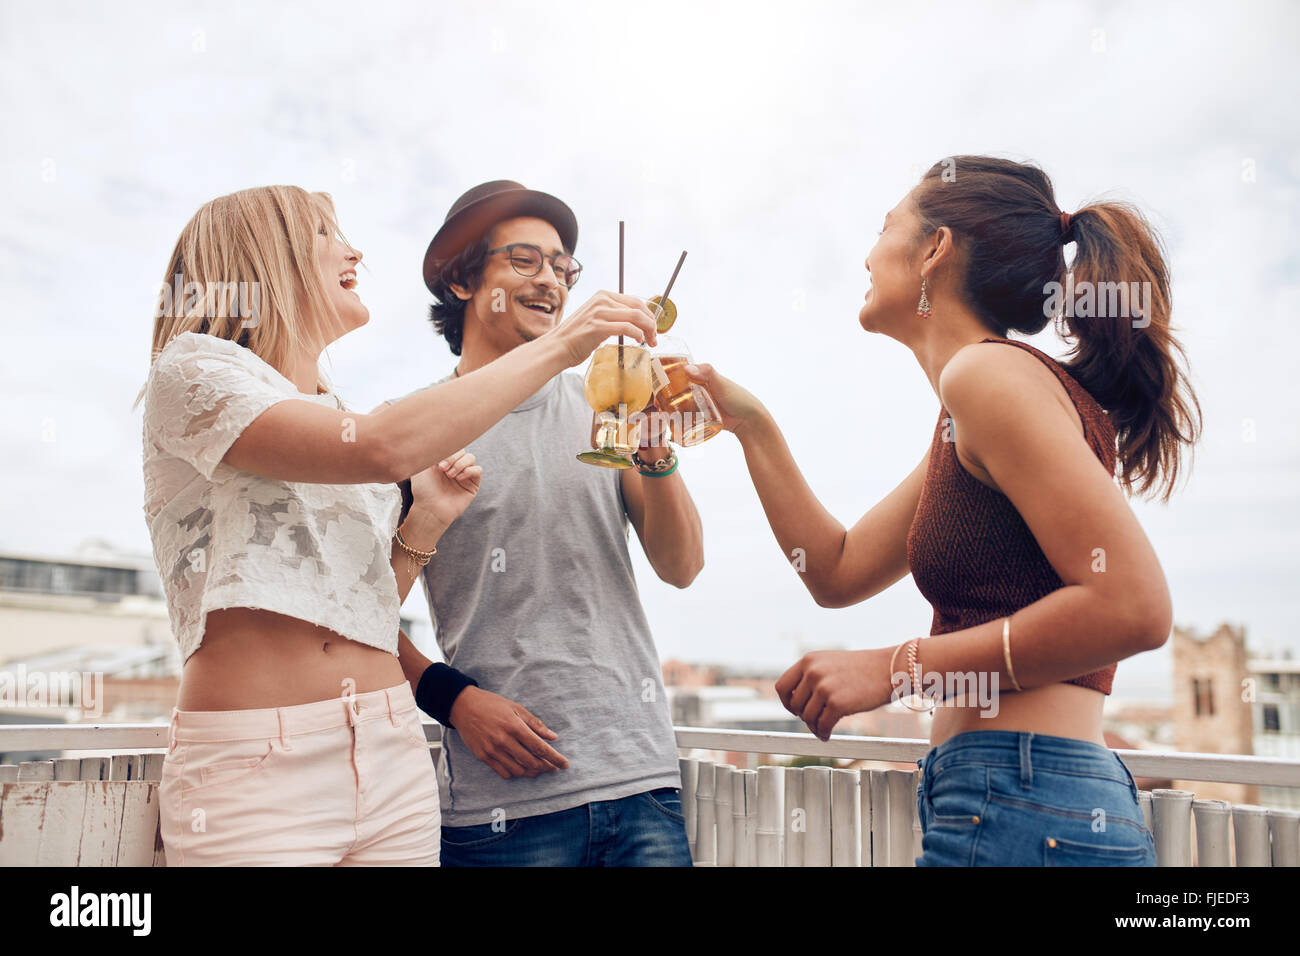 Tourné en plein air de jeunes de prendre un cocktail à l'occasion d'une fête. Trois jeunes friends toasting drinks au cours de soirée sur le toit. Banque D'Images